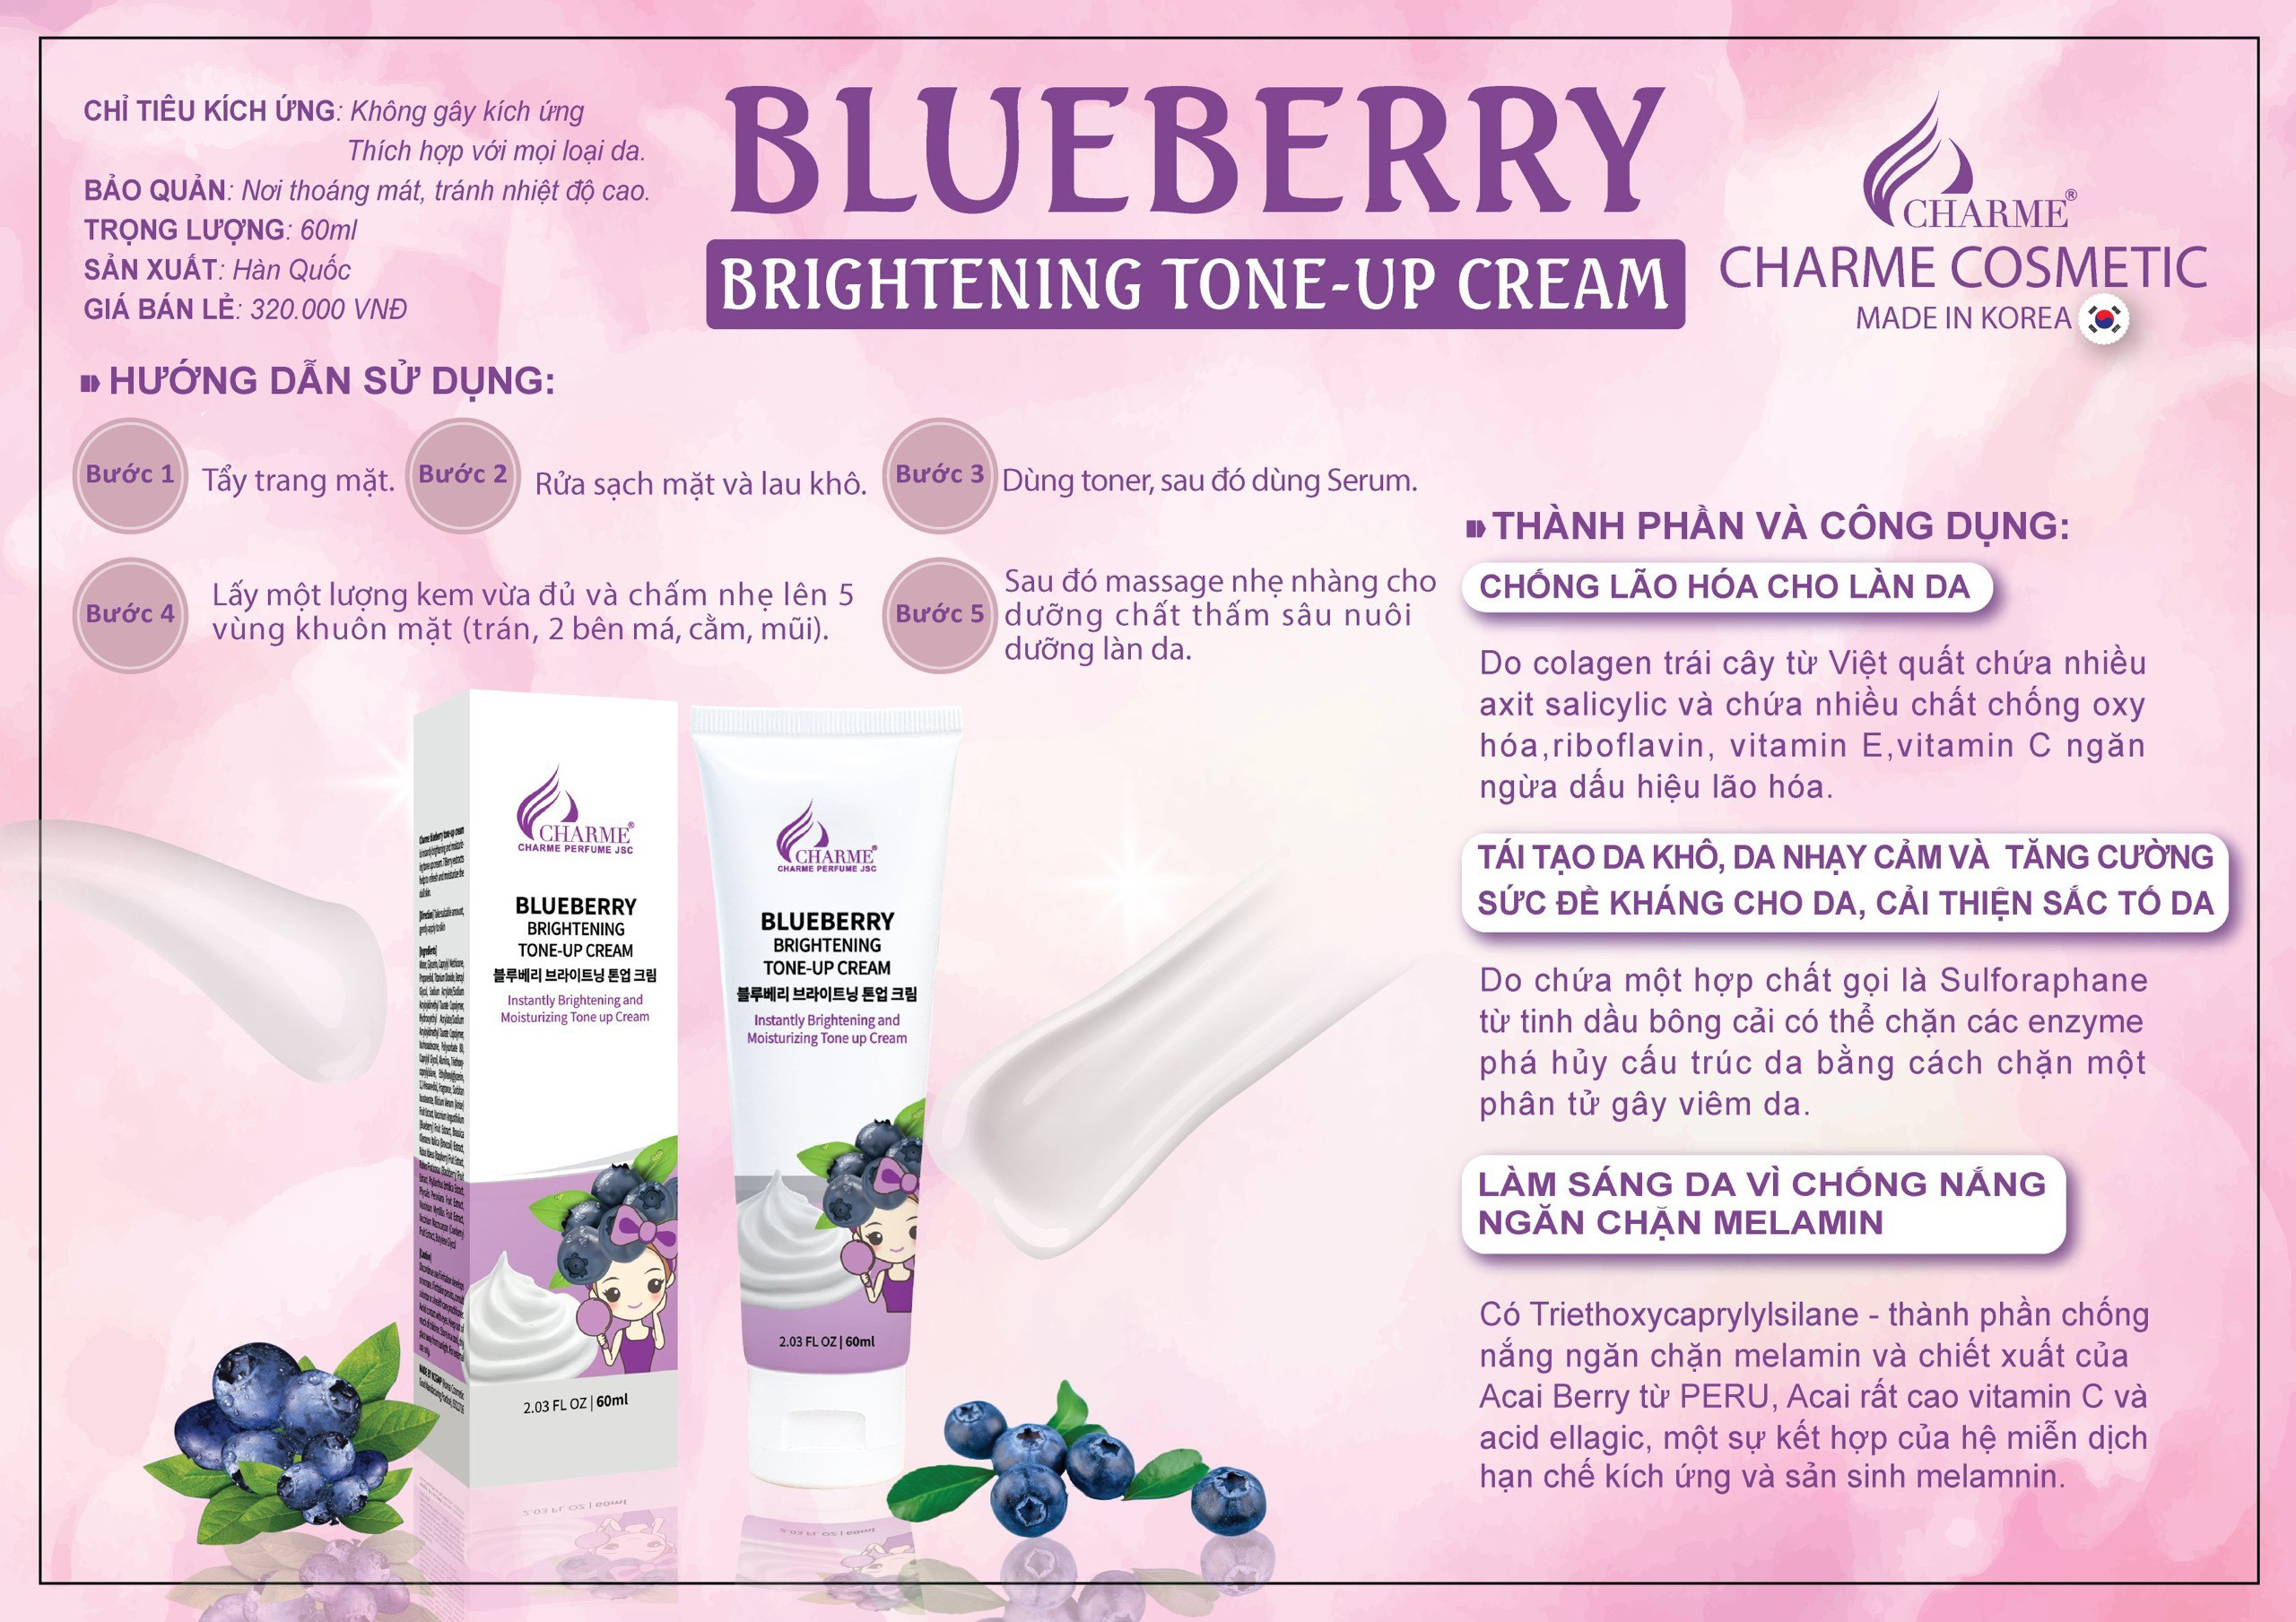 Kem Face Charme Blueberry 60ml